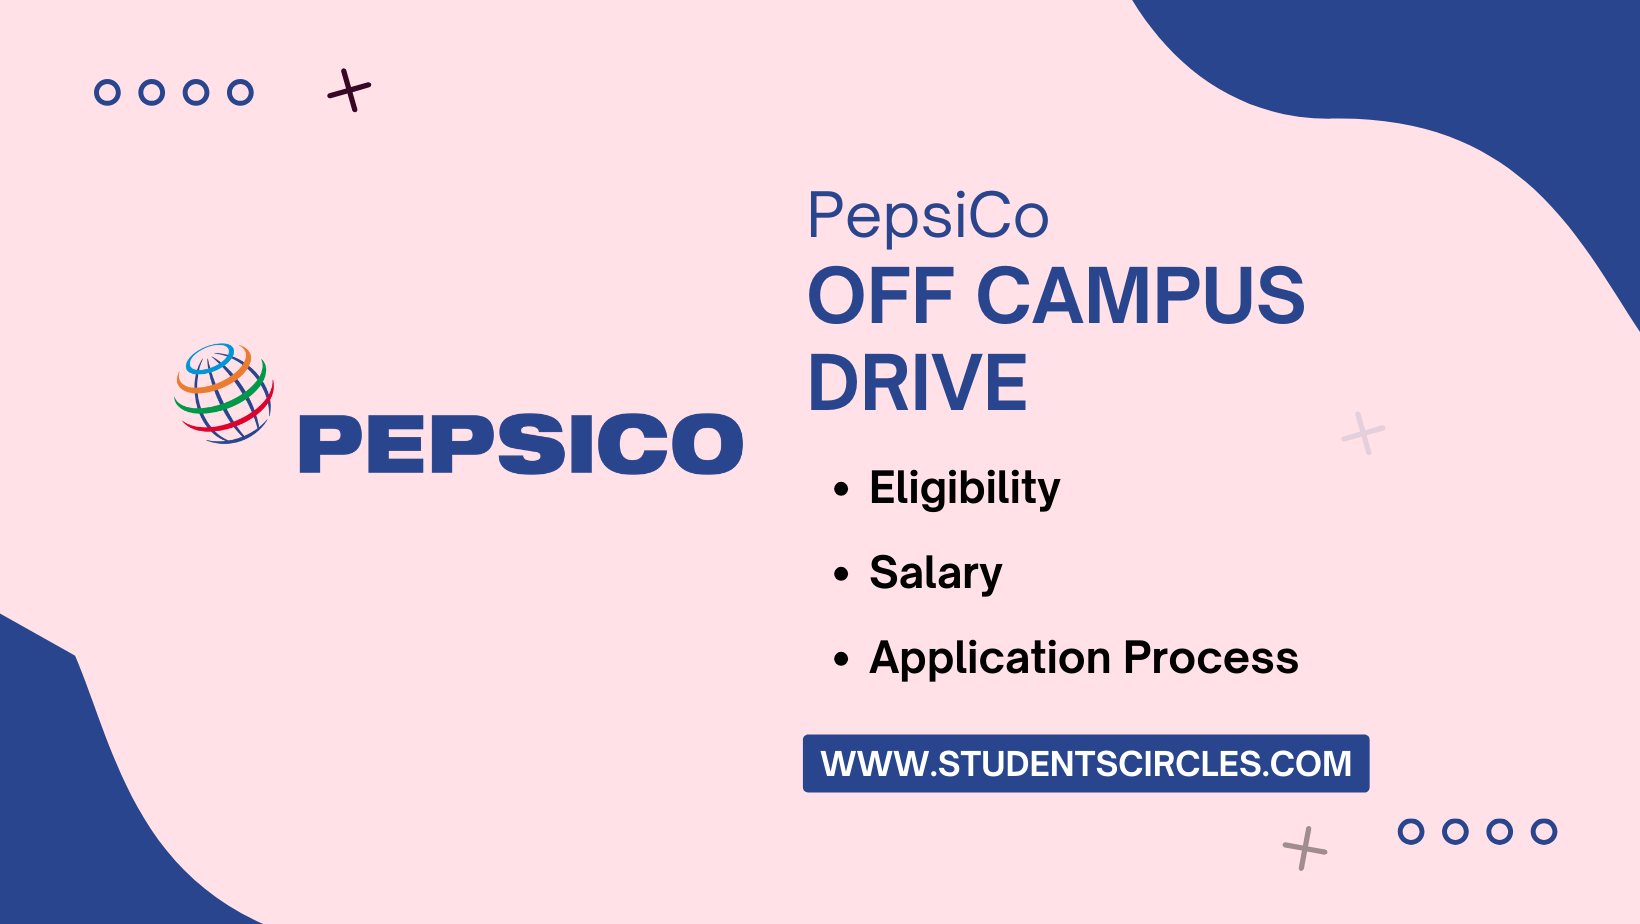 PepsiCo Off Campus Drive